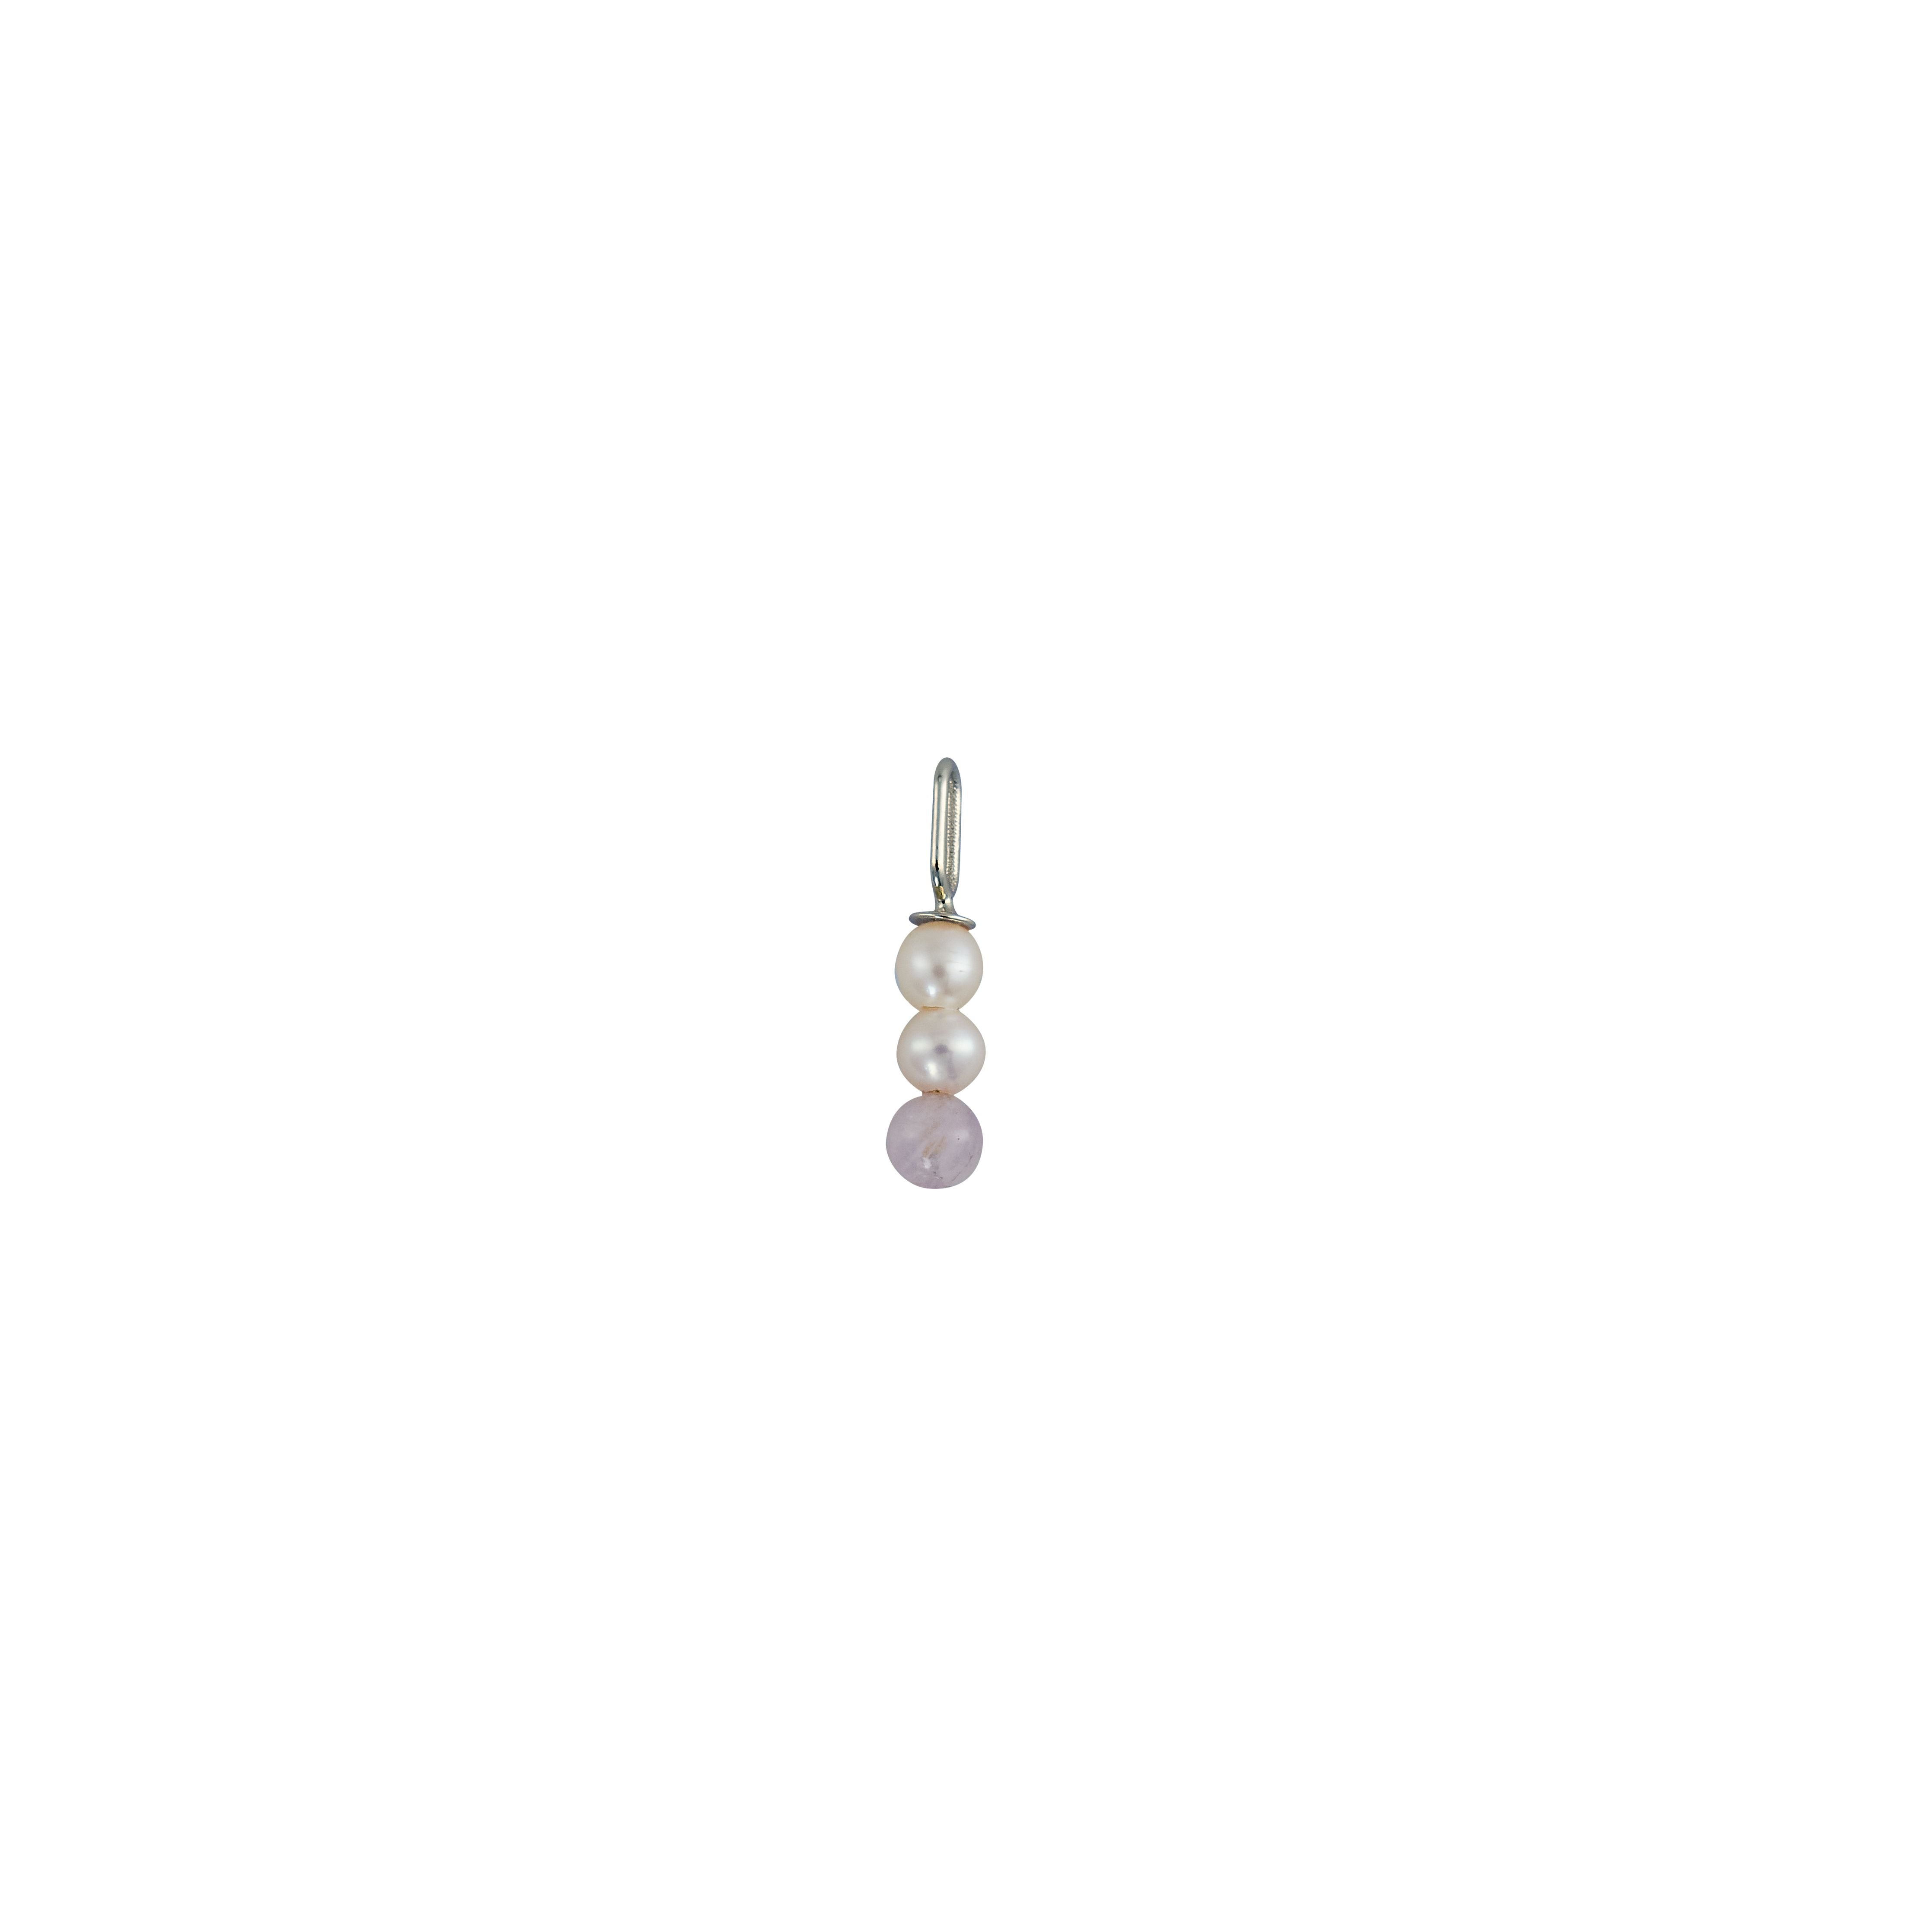 Letras de diseño encanto de palo de perla 4 mm colgante plateado chapado, cristal puro